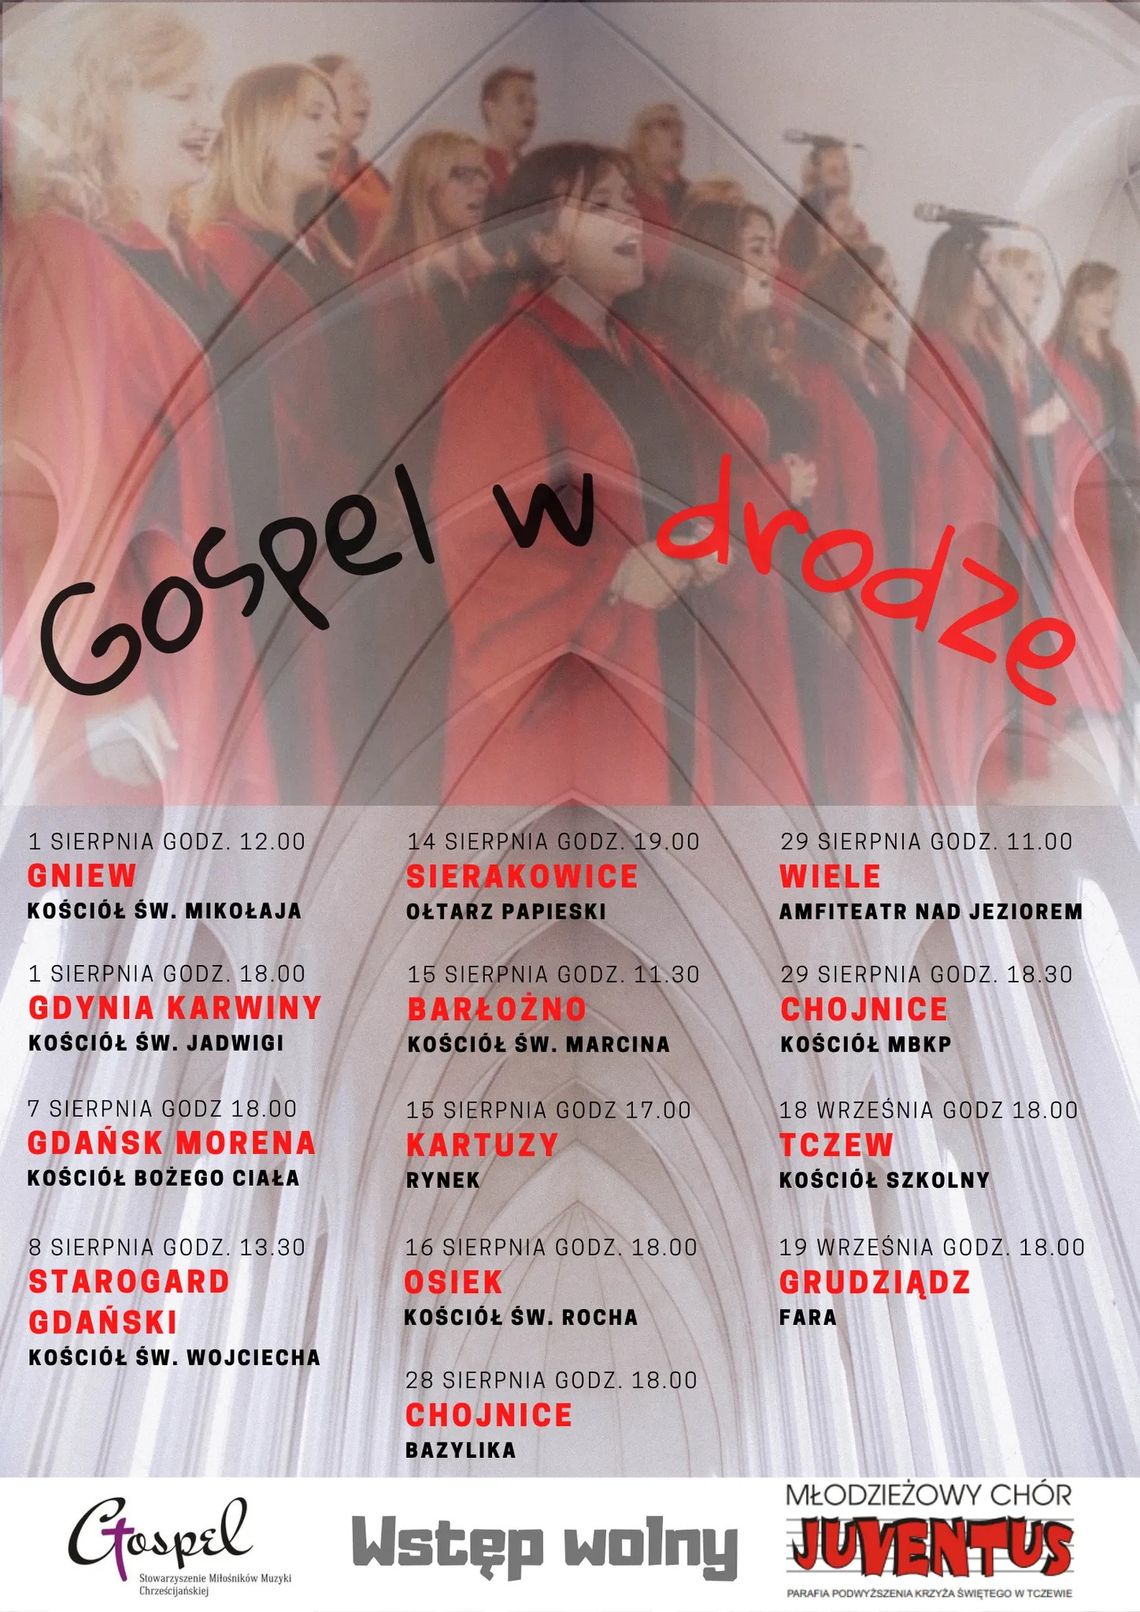 Tczewski chór w trasie koncertowej z muzyką gospel [ROZMOWA]